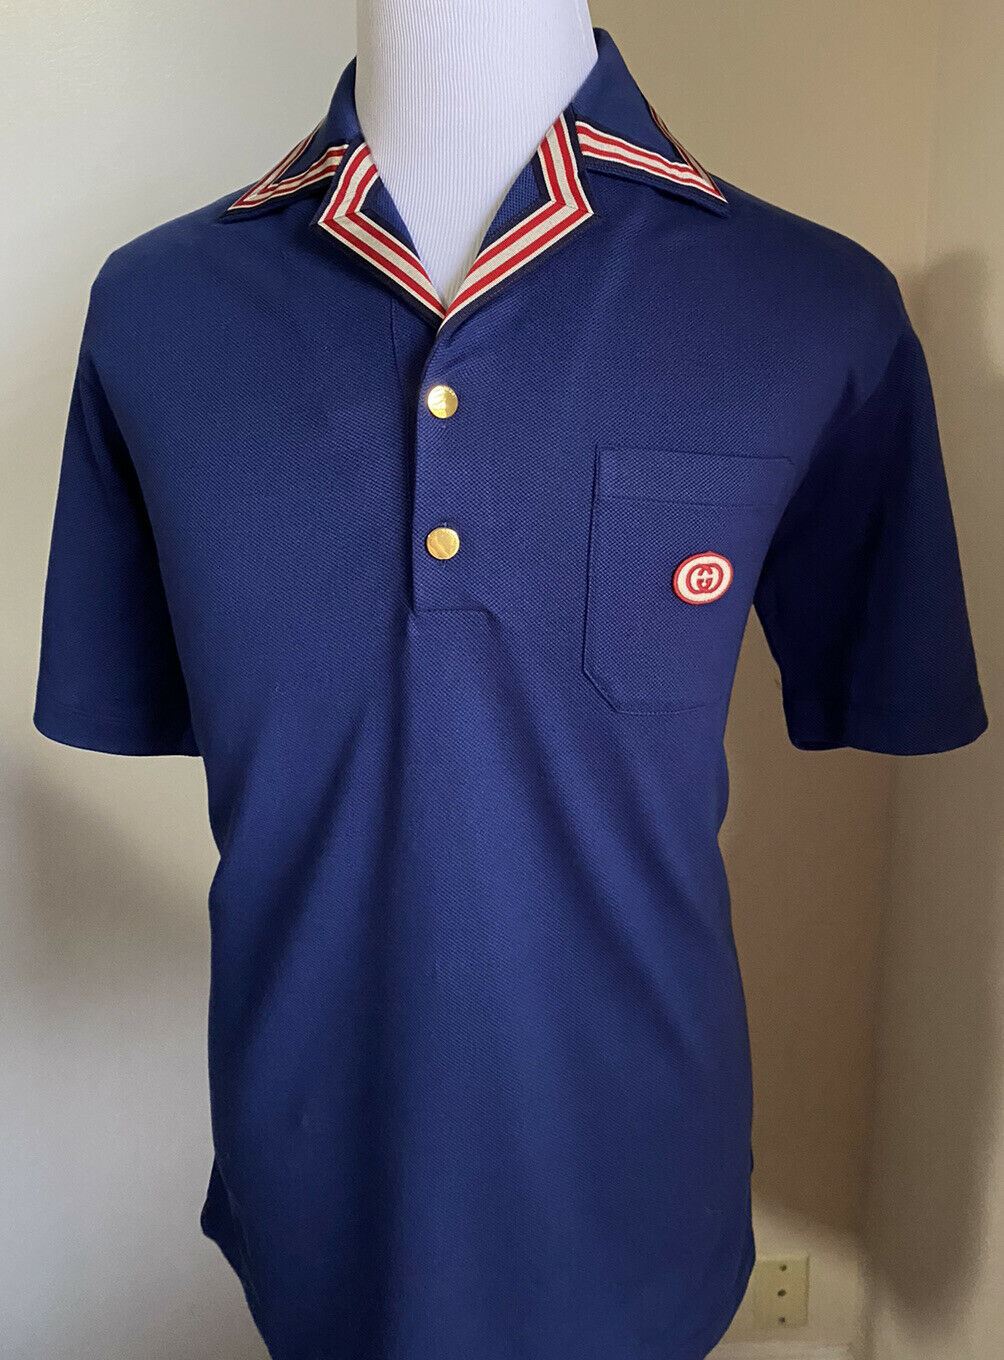 Neu mit Etikett: 1600 Gucci Herren-Kurzarm-Poloshirt, Blau, Größe XL, Italien